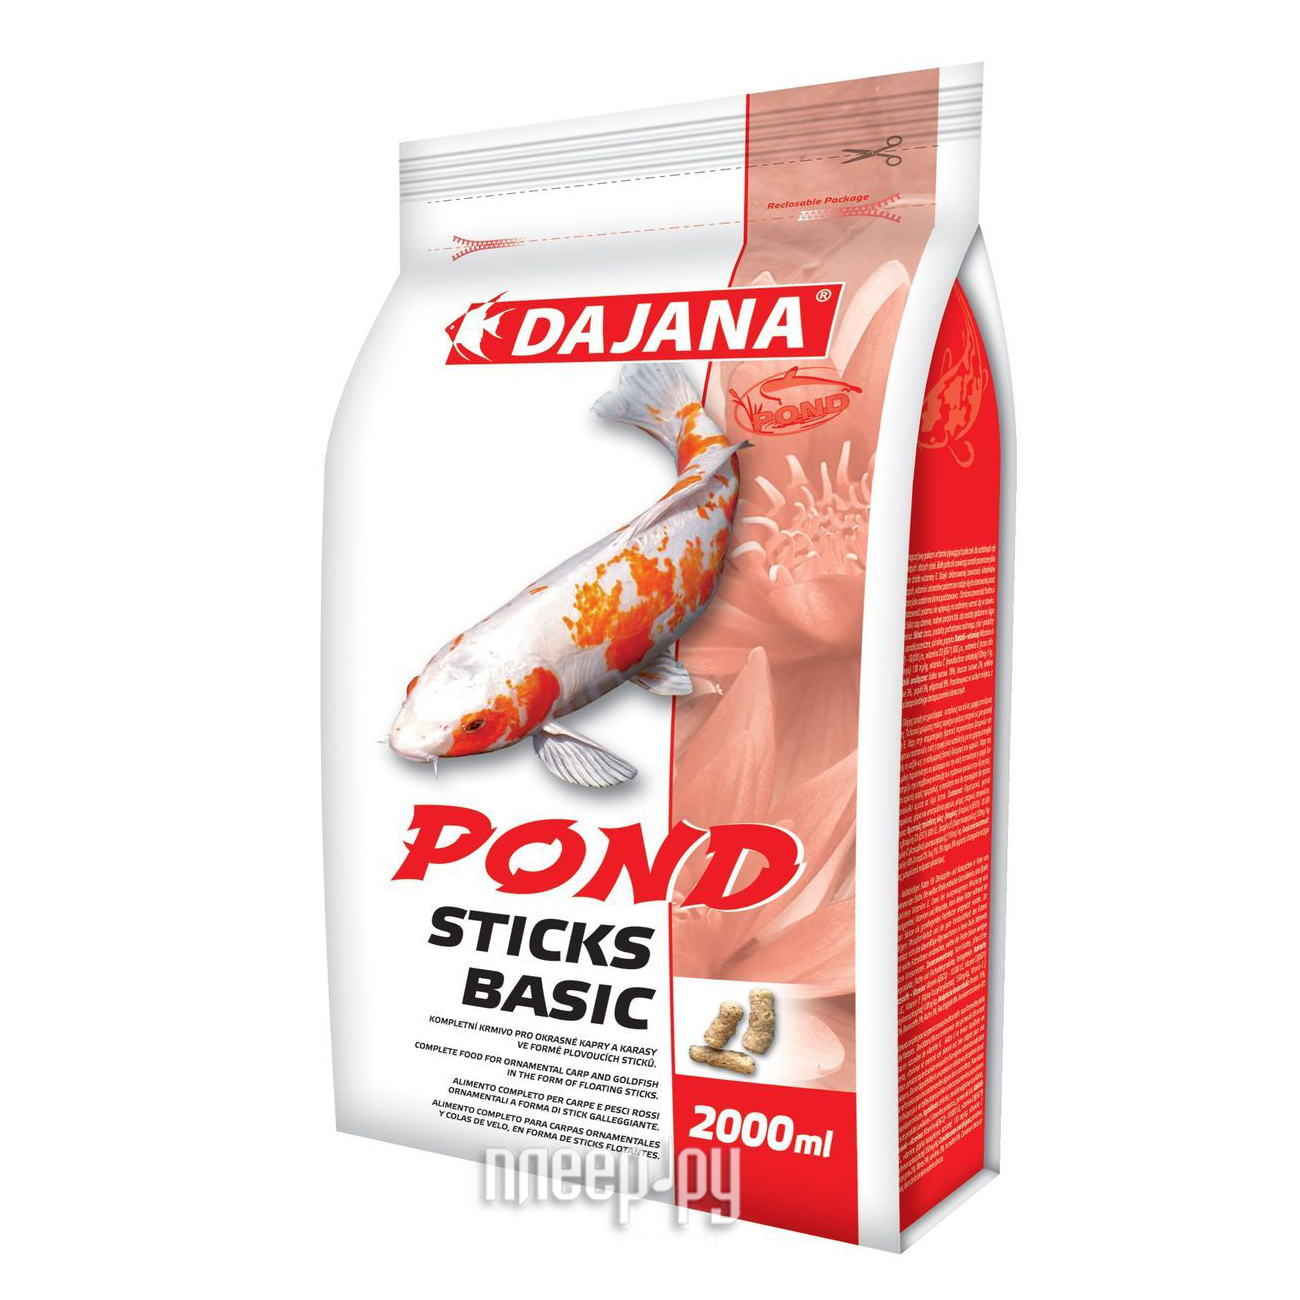  Dajana Pond Sticks Basic 2000ml   DP302S